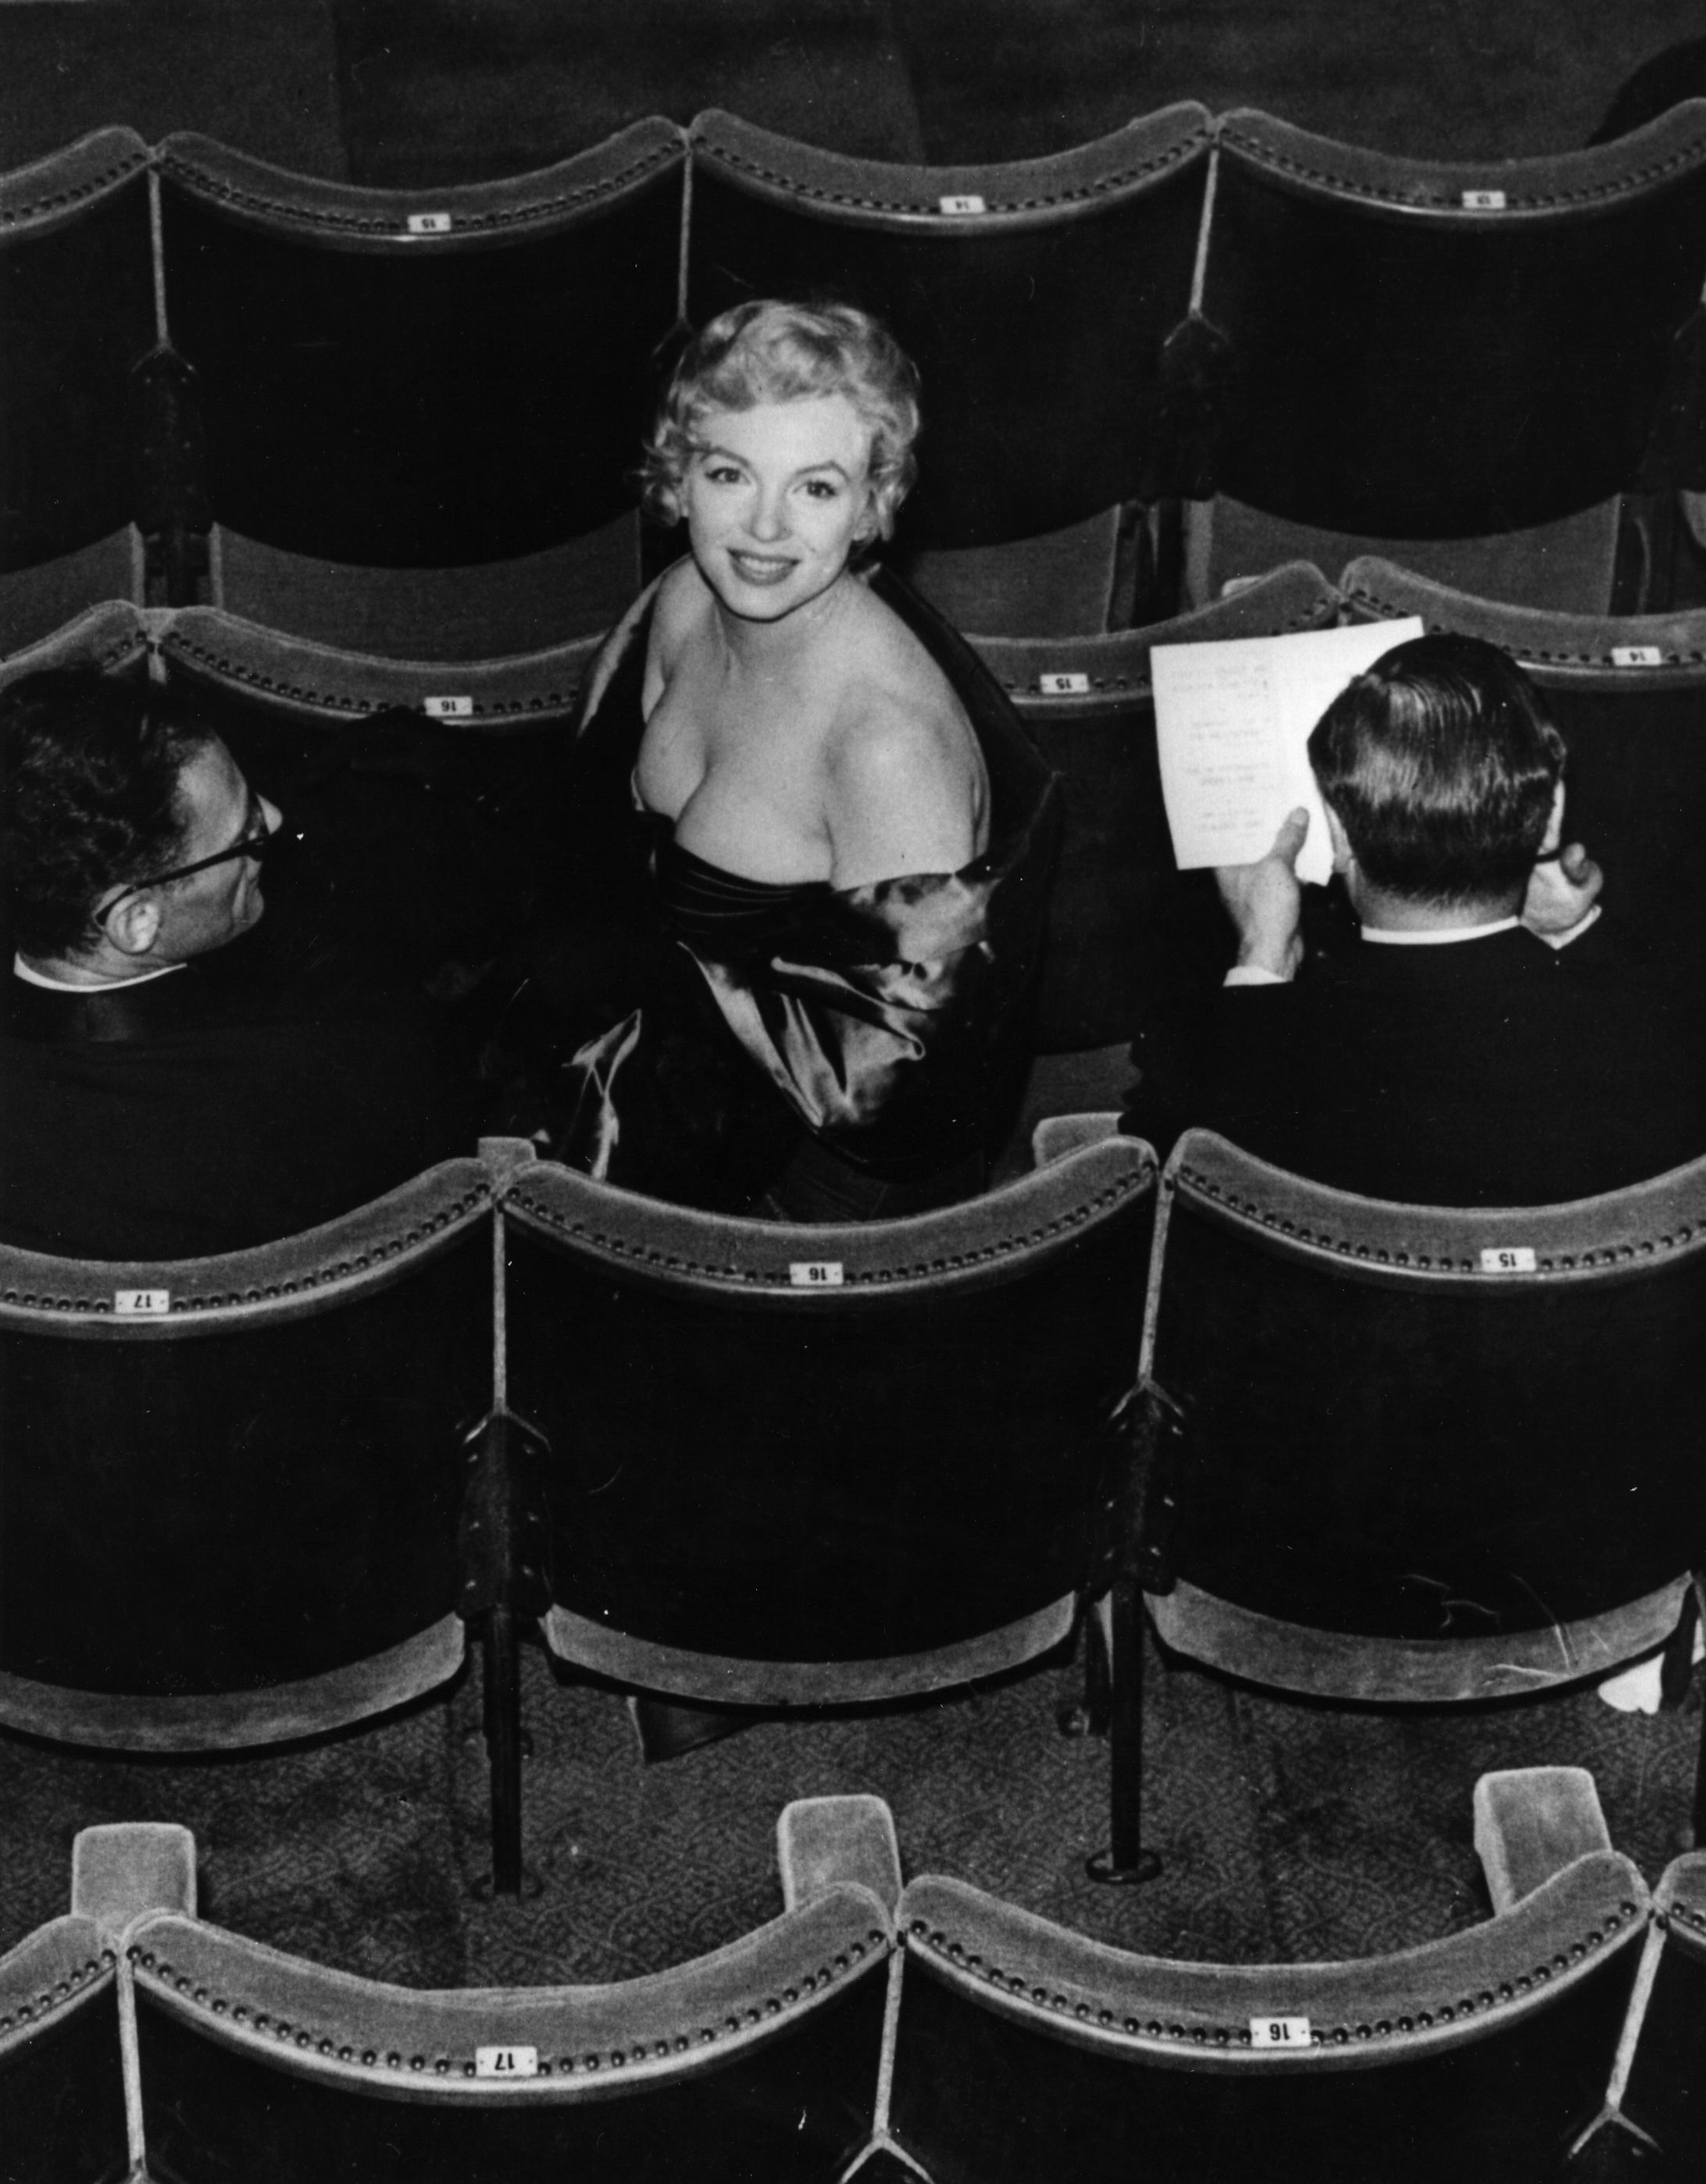 <p>На этом фото Мэрилин Монро в Театре комедии в Лондоне на премьере пьесы &laquo;Вид с моста&raquo;, которую написал Артур Миллер (он сидит слева), 12 октября 1956 года.</p>

<p>Последней работой Монро в кино стал фильм &laquo;Неприкаянные&raquo;&nbsp;1961 года. Она снялась в нем вместе с Монтгомери Клифтом и Кларком Гейблом (его на съемочной площадке хватил удар, и вскоре он умер, а через год скончалась и Мэрилин&nbsp;&mdash; такой мрачный факт). Сценарий к фильму написал Артур Миллер специально для Монро&nbsp;&mdash; она сыграла драматическую роль Розлин, пытающейся развестись с мужем. Картина, впрочем, провалилась в прокате, но получила признание критиков за актерскую игру и сценарий. Вскоре вообще стала считаться шедевром, одним из лучших фильмов 1960-х</p>